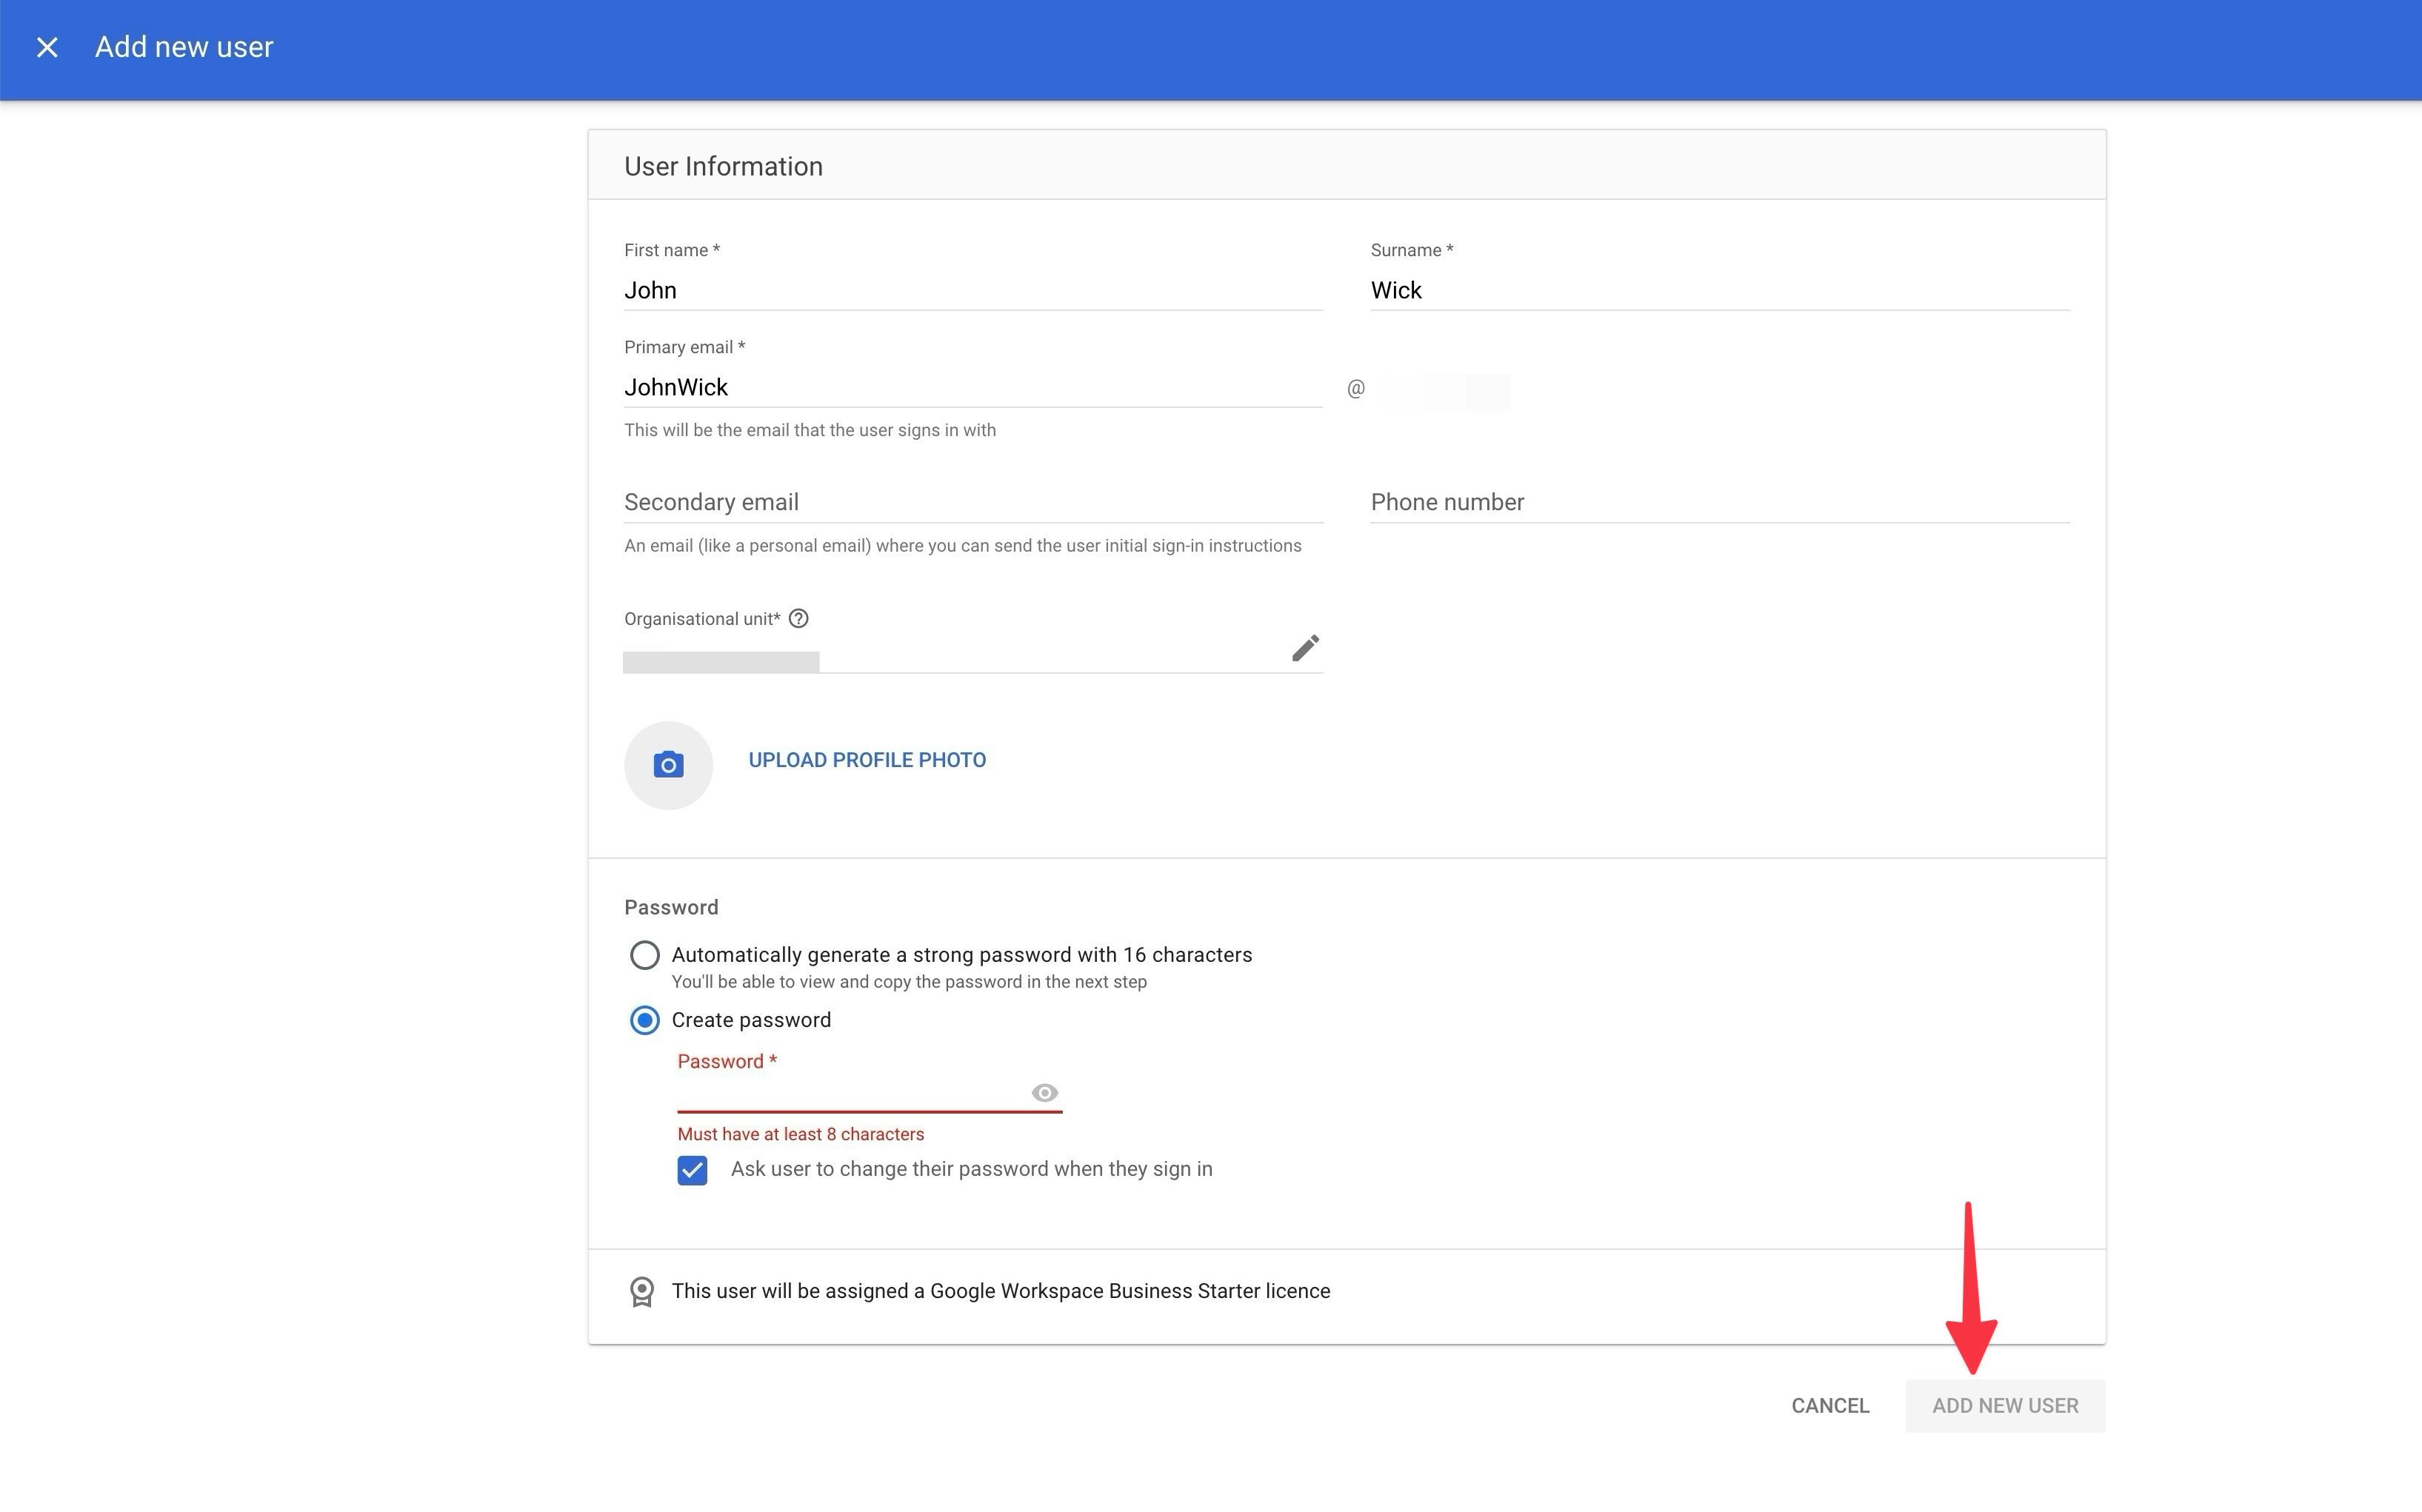 detalhes do novo usuário no Admin Console do Google Workspace